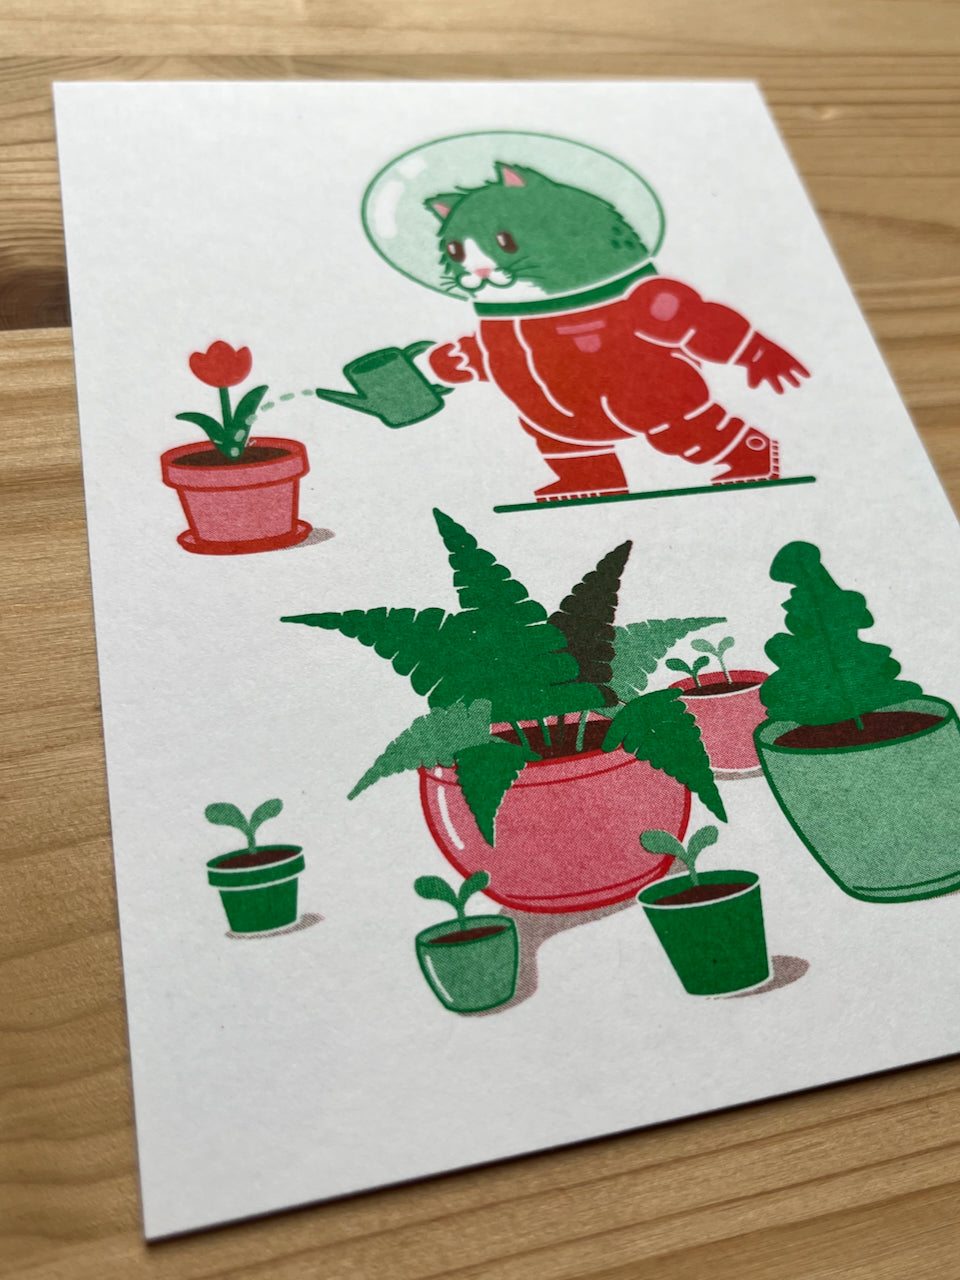 Astrocat geeft de planten water